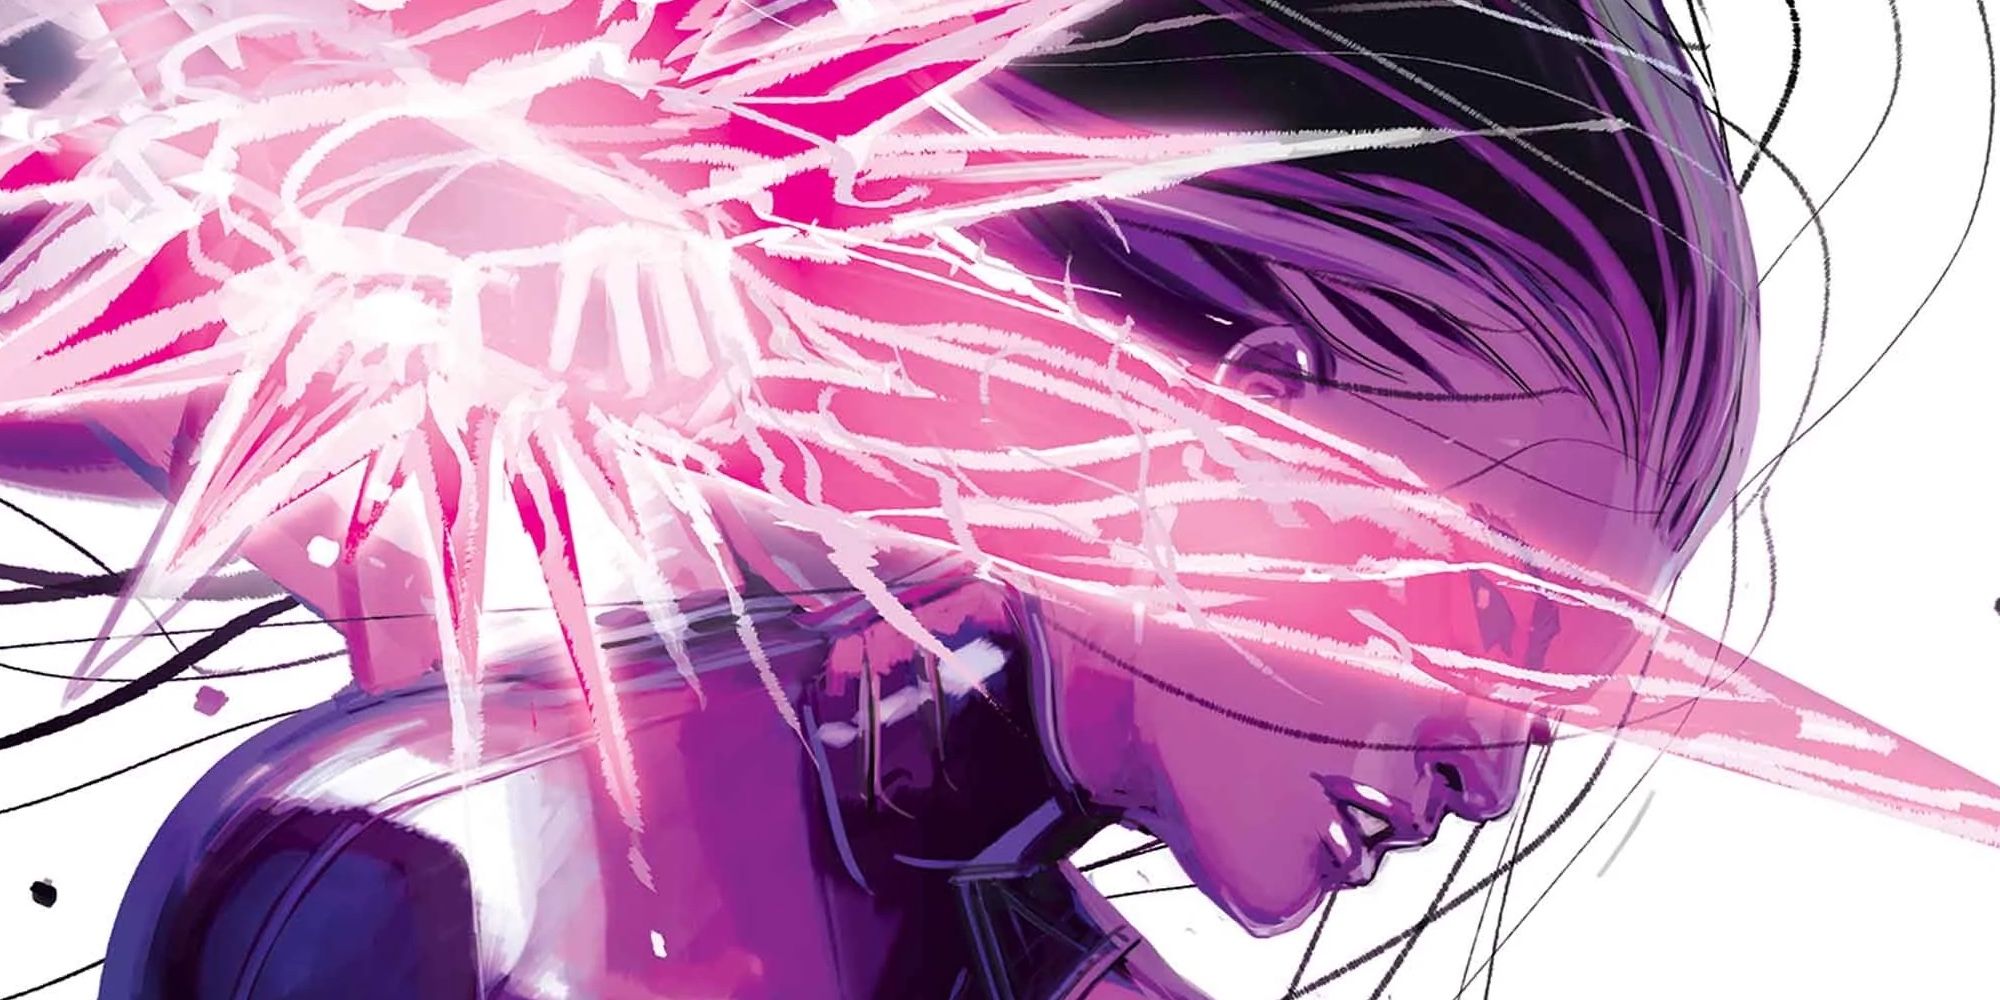 Marvel’s Blood Hunt enfrenta a Psylocke contra monstruos mucho peores que los vampiros